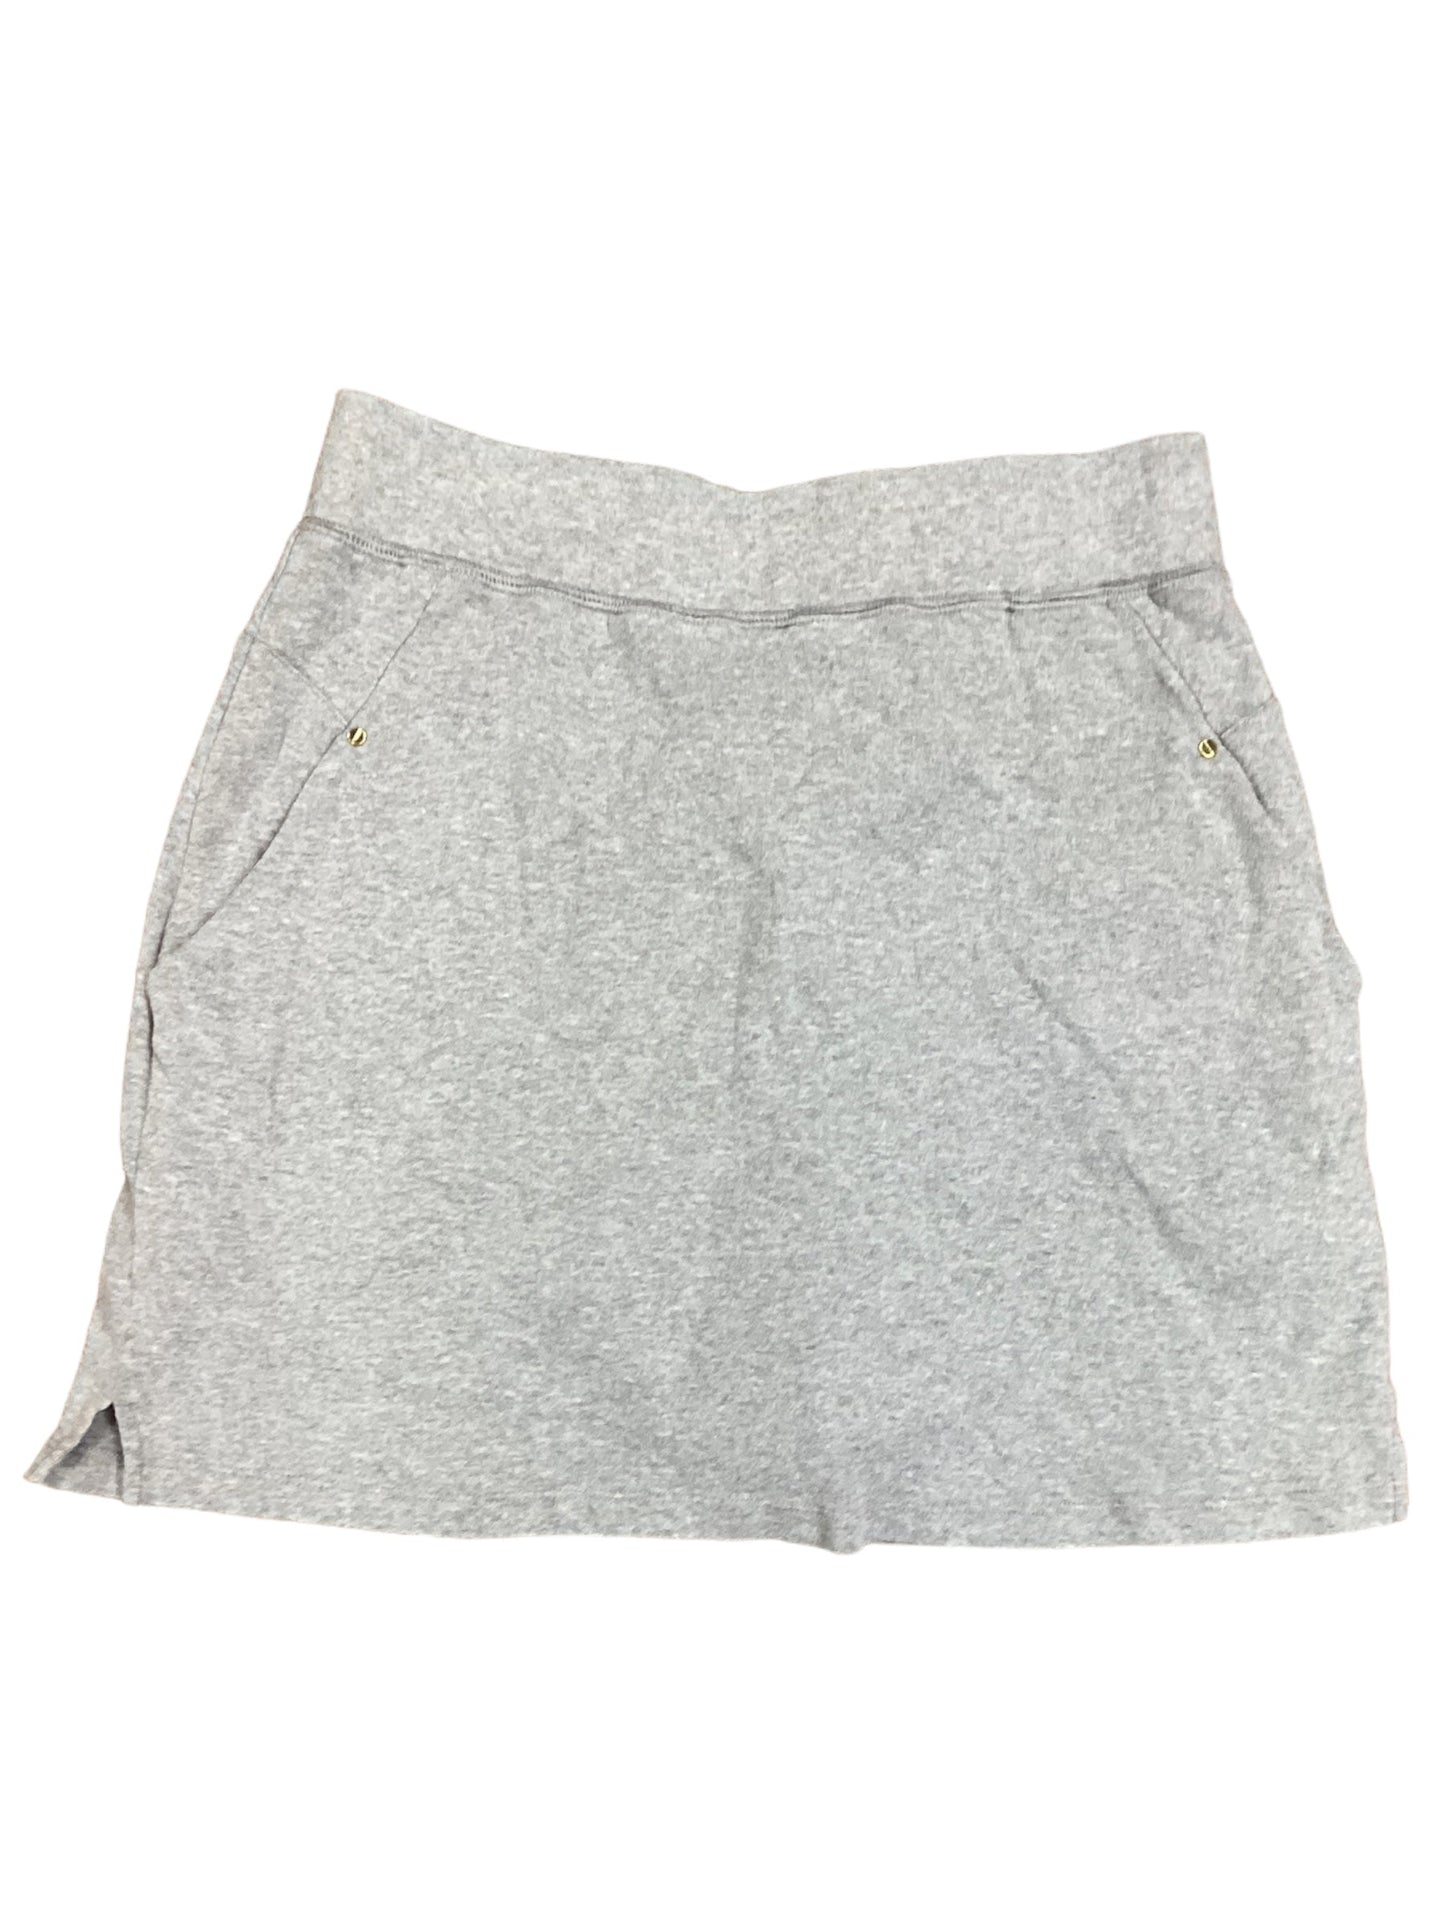 Skirt Mini & Short By Jones New York  Size: S